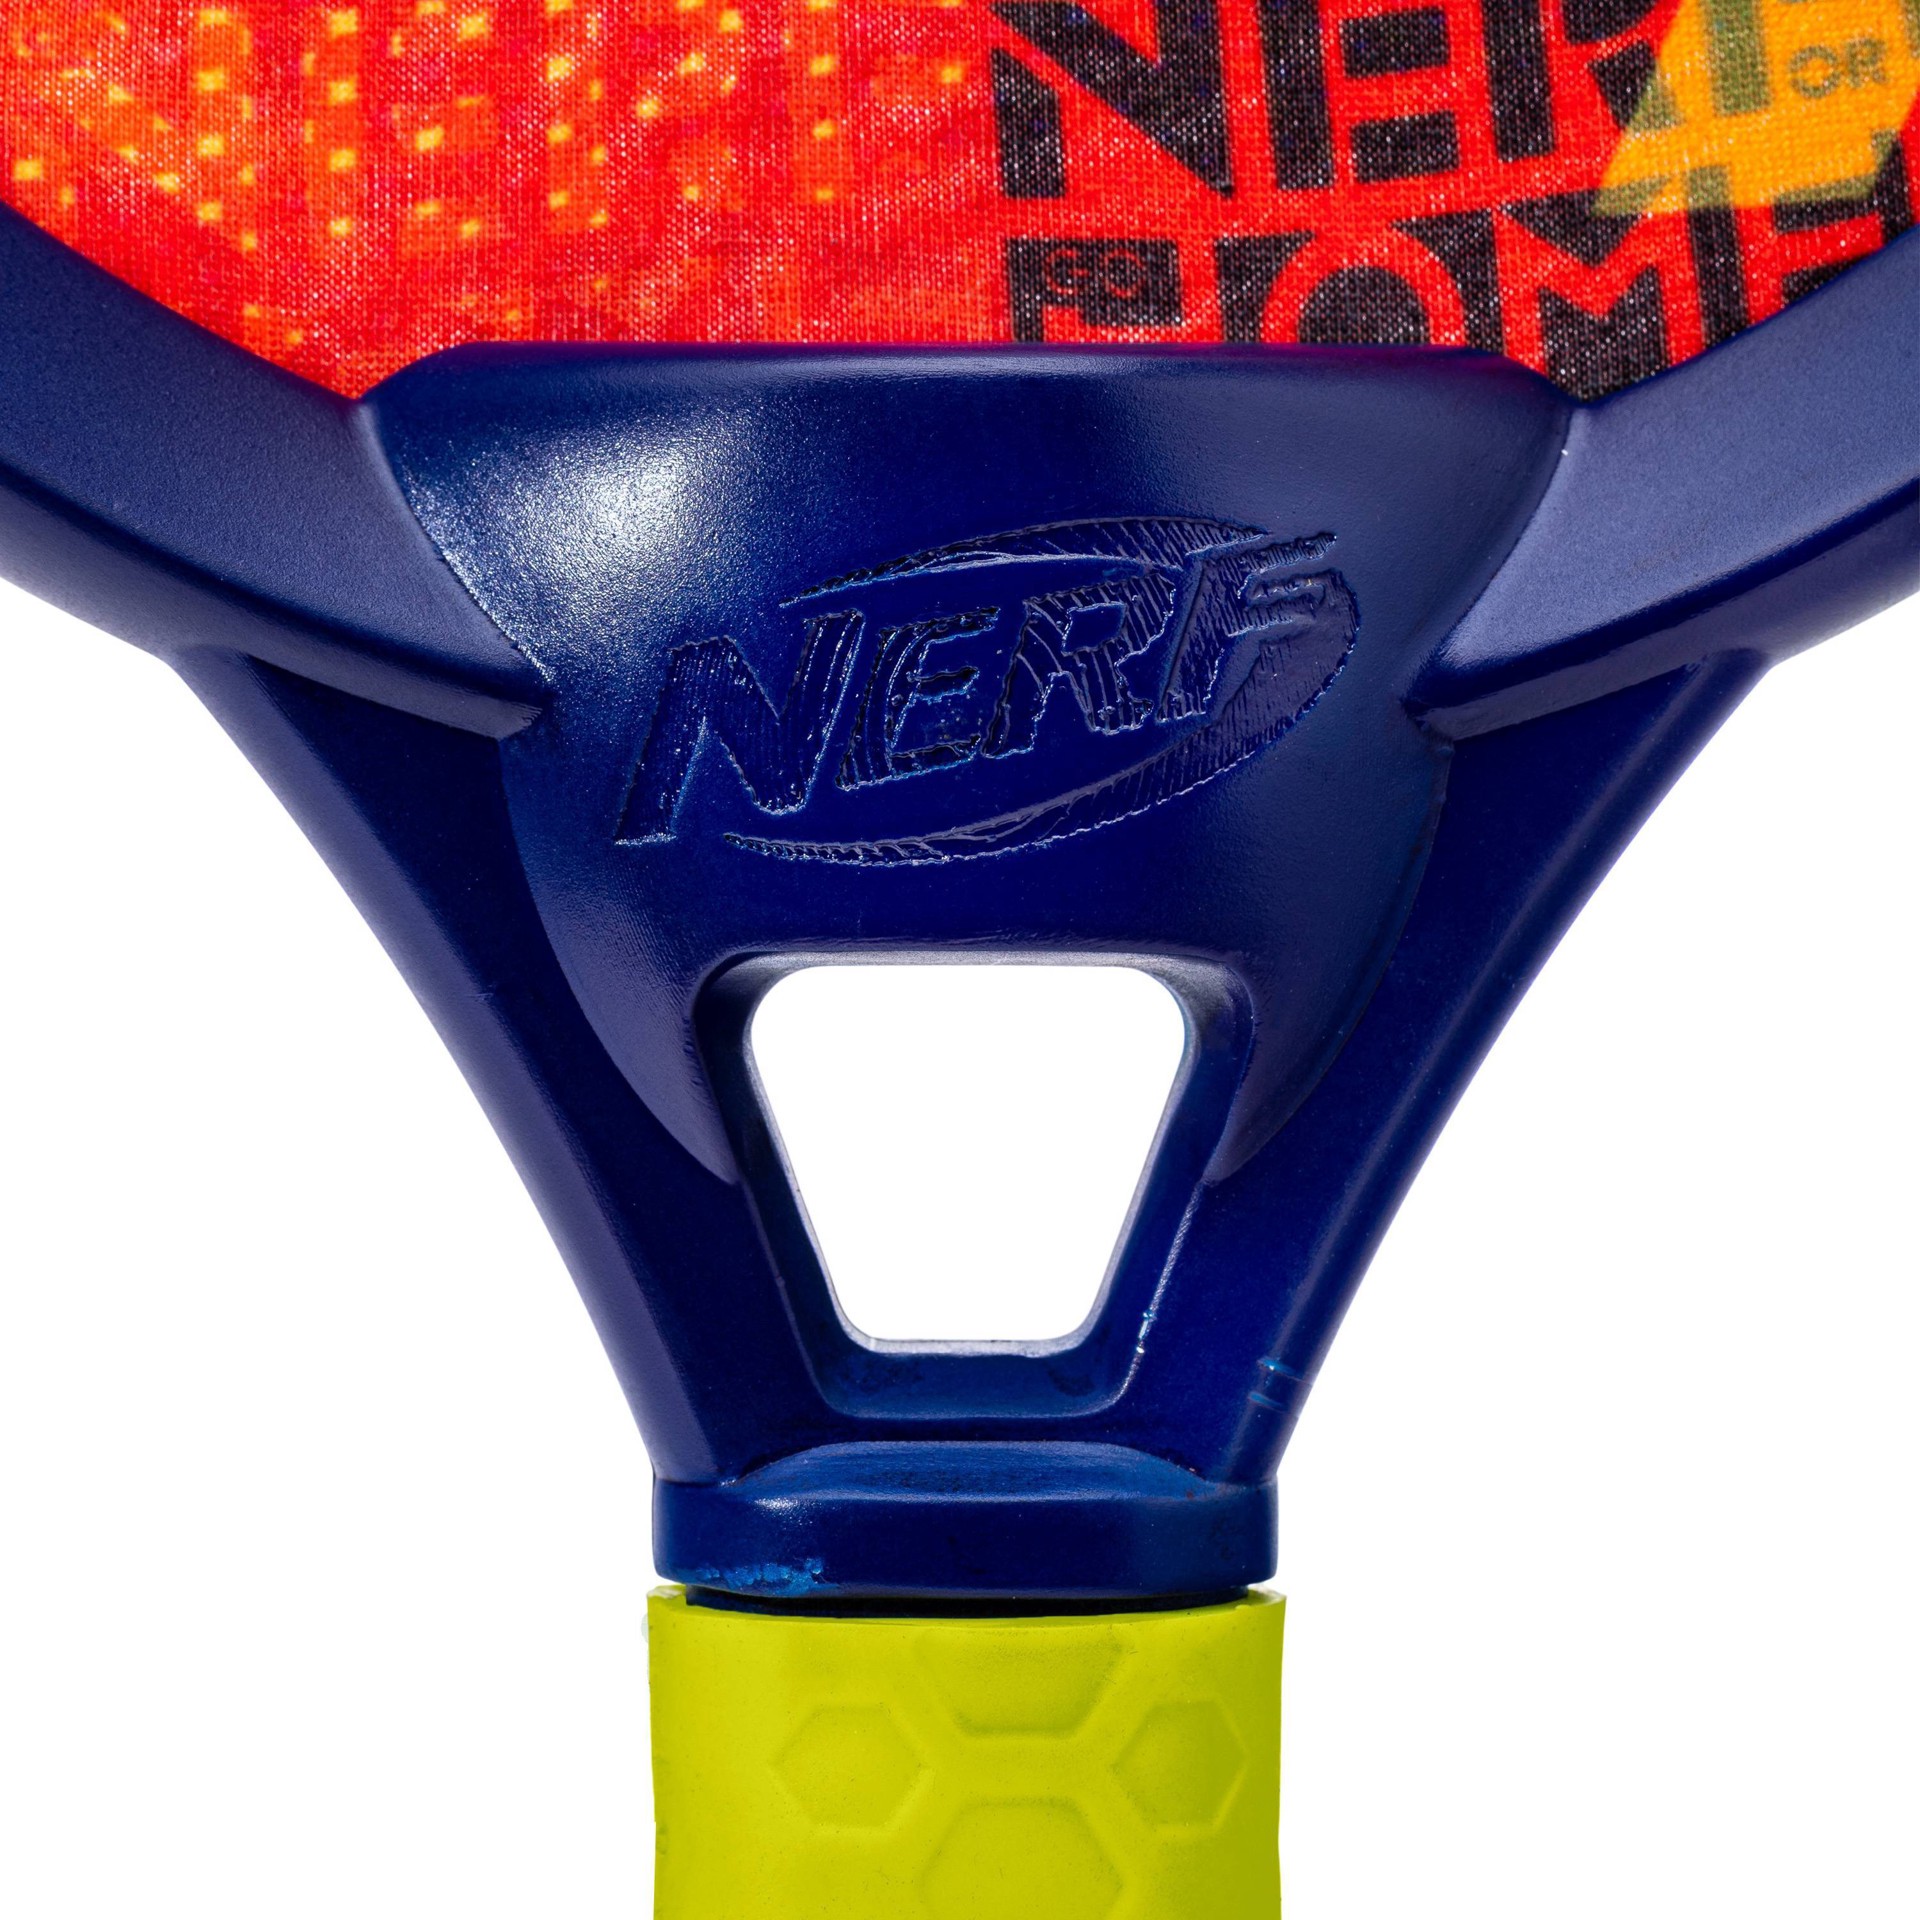 Nerf Toy Tennis Set - 3pc : Target